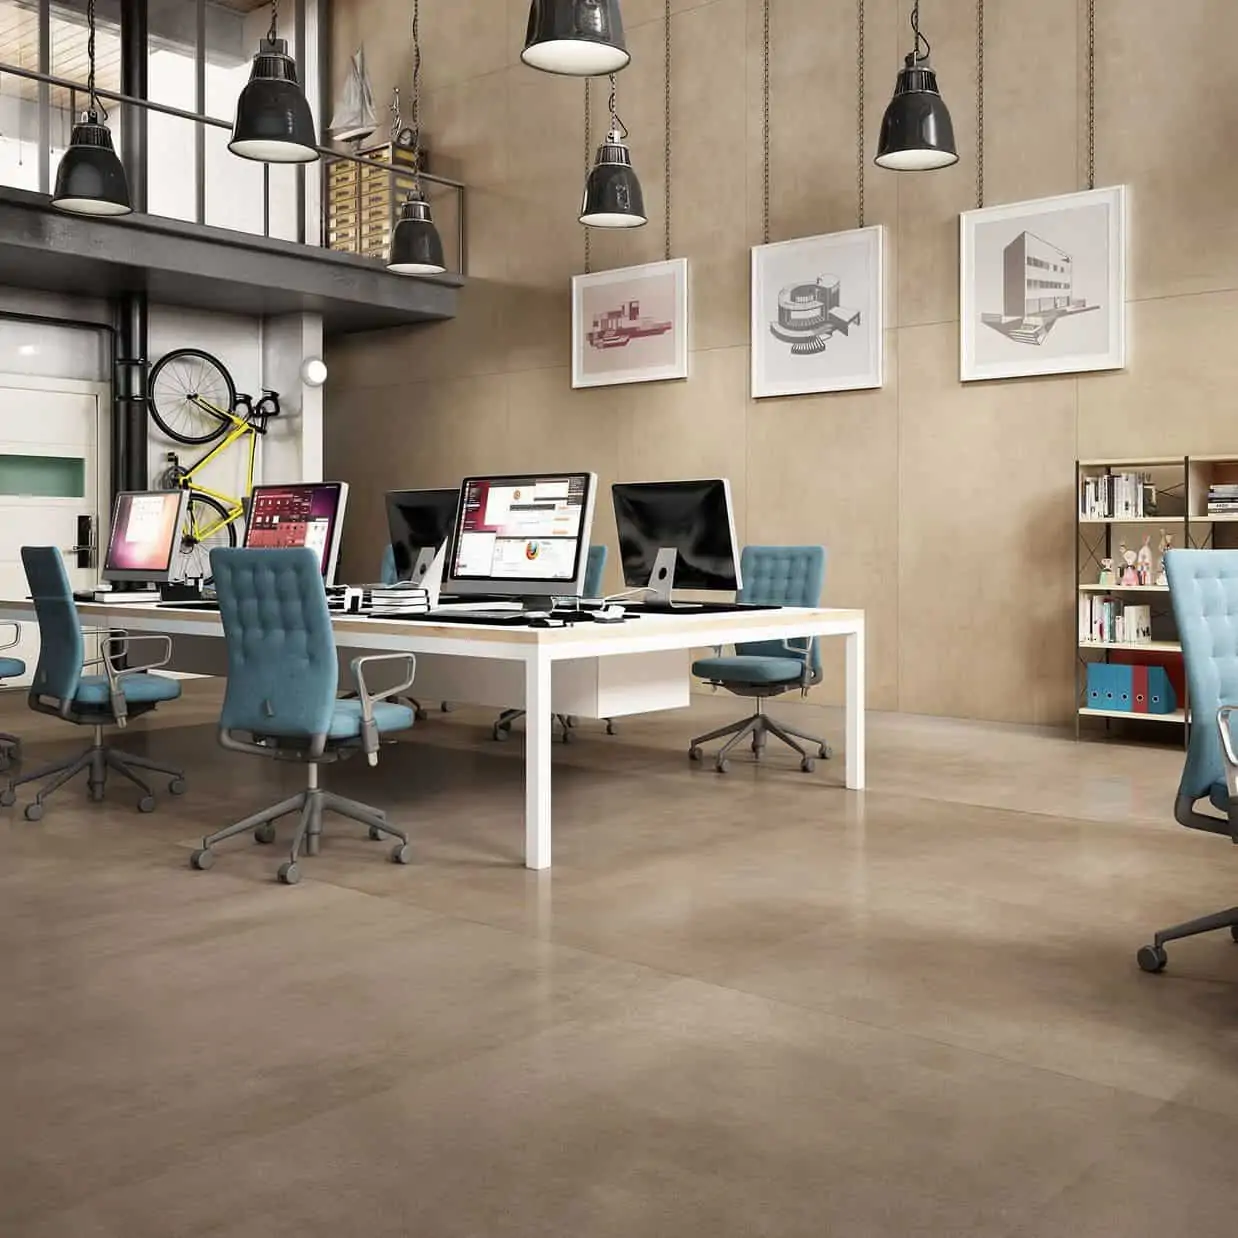 RAK Ceramic tiles- Maximus Surface XL best ceramic tiles for floor in matt texture at lowest price